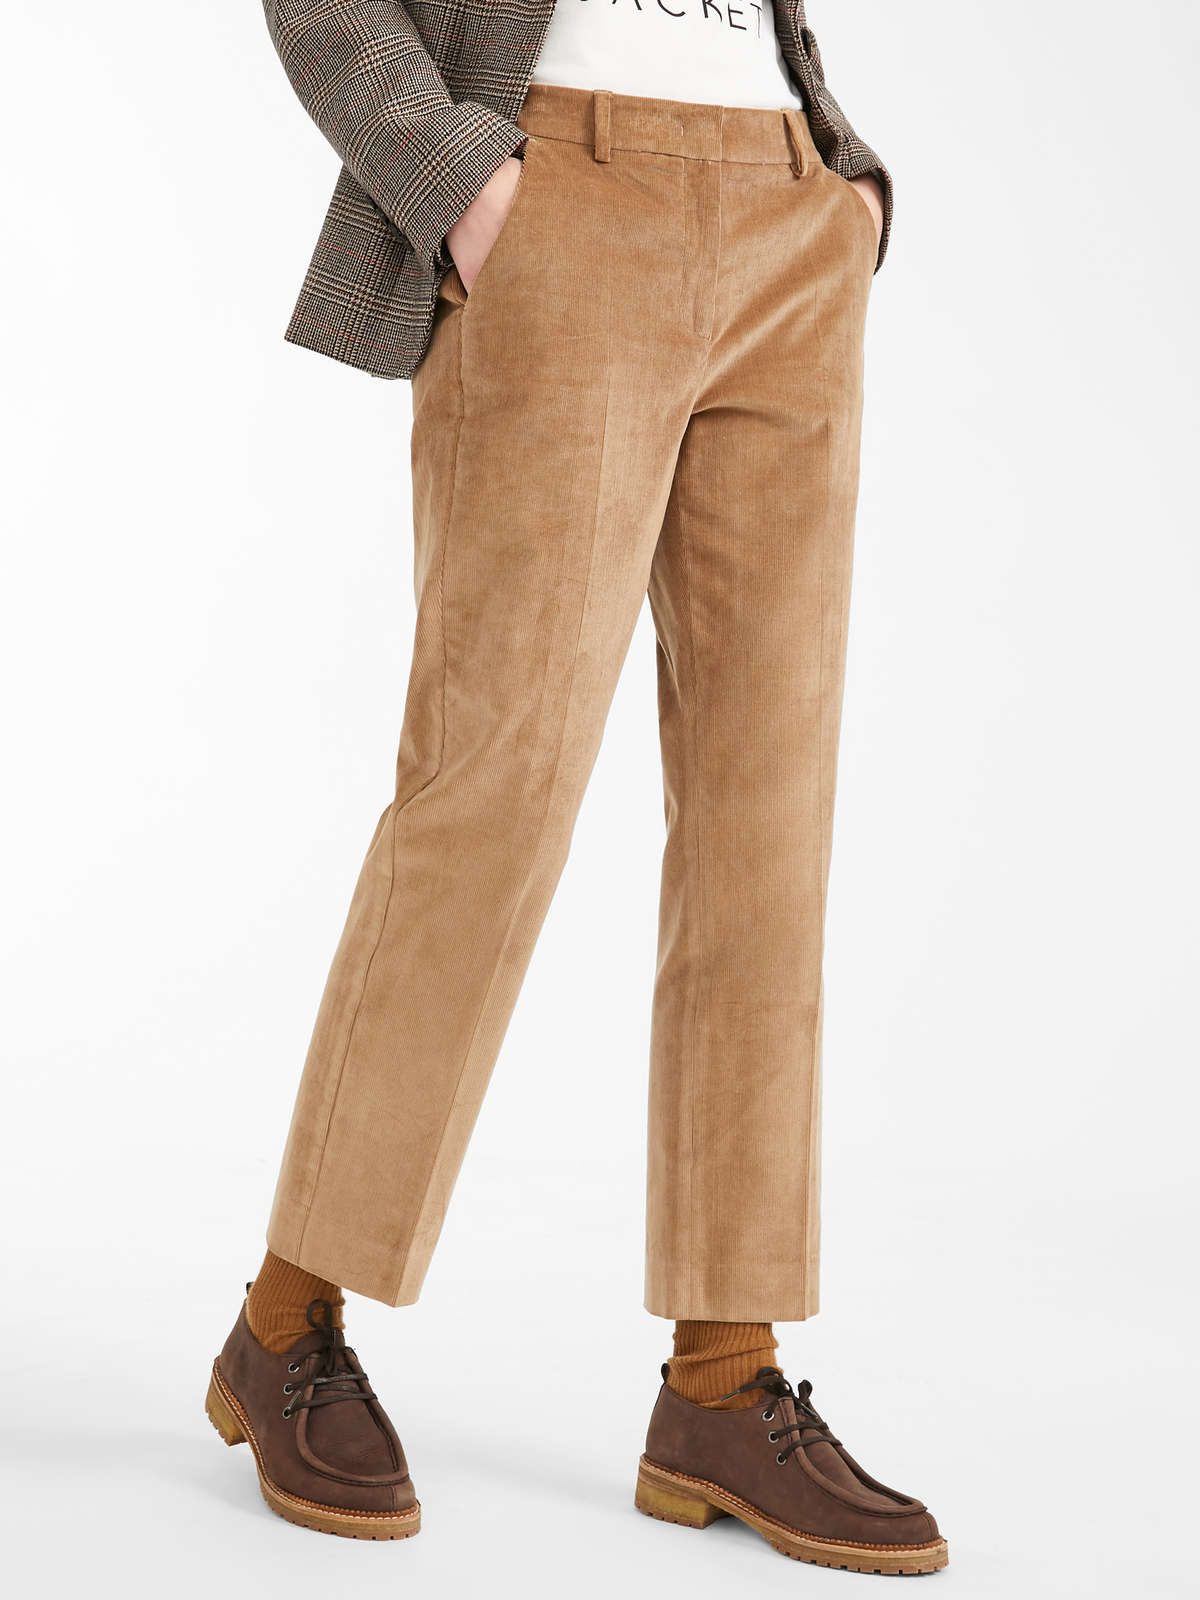 Khaki Brown Corduroy Pants